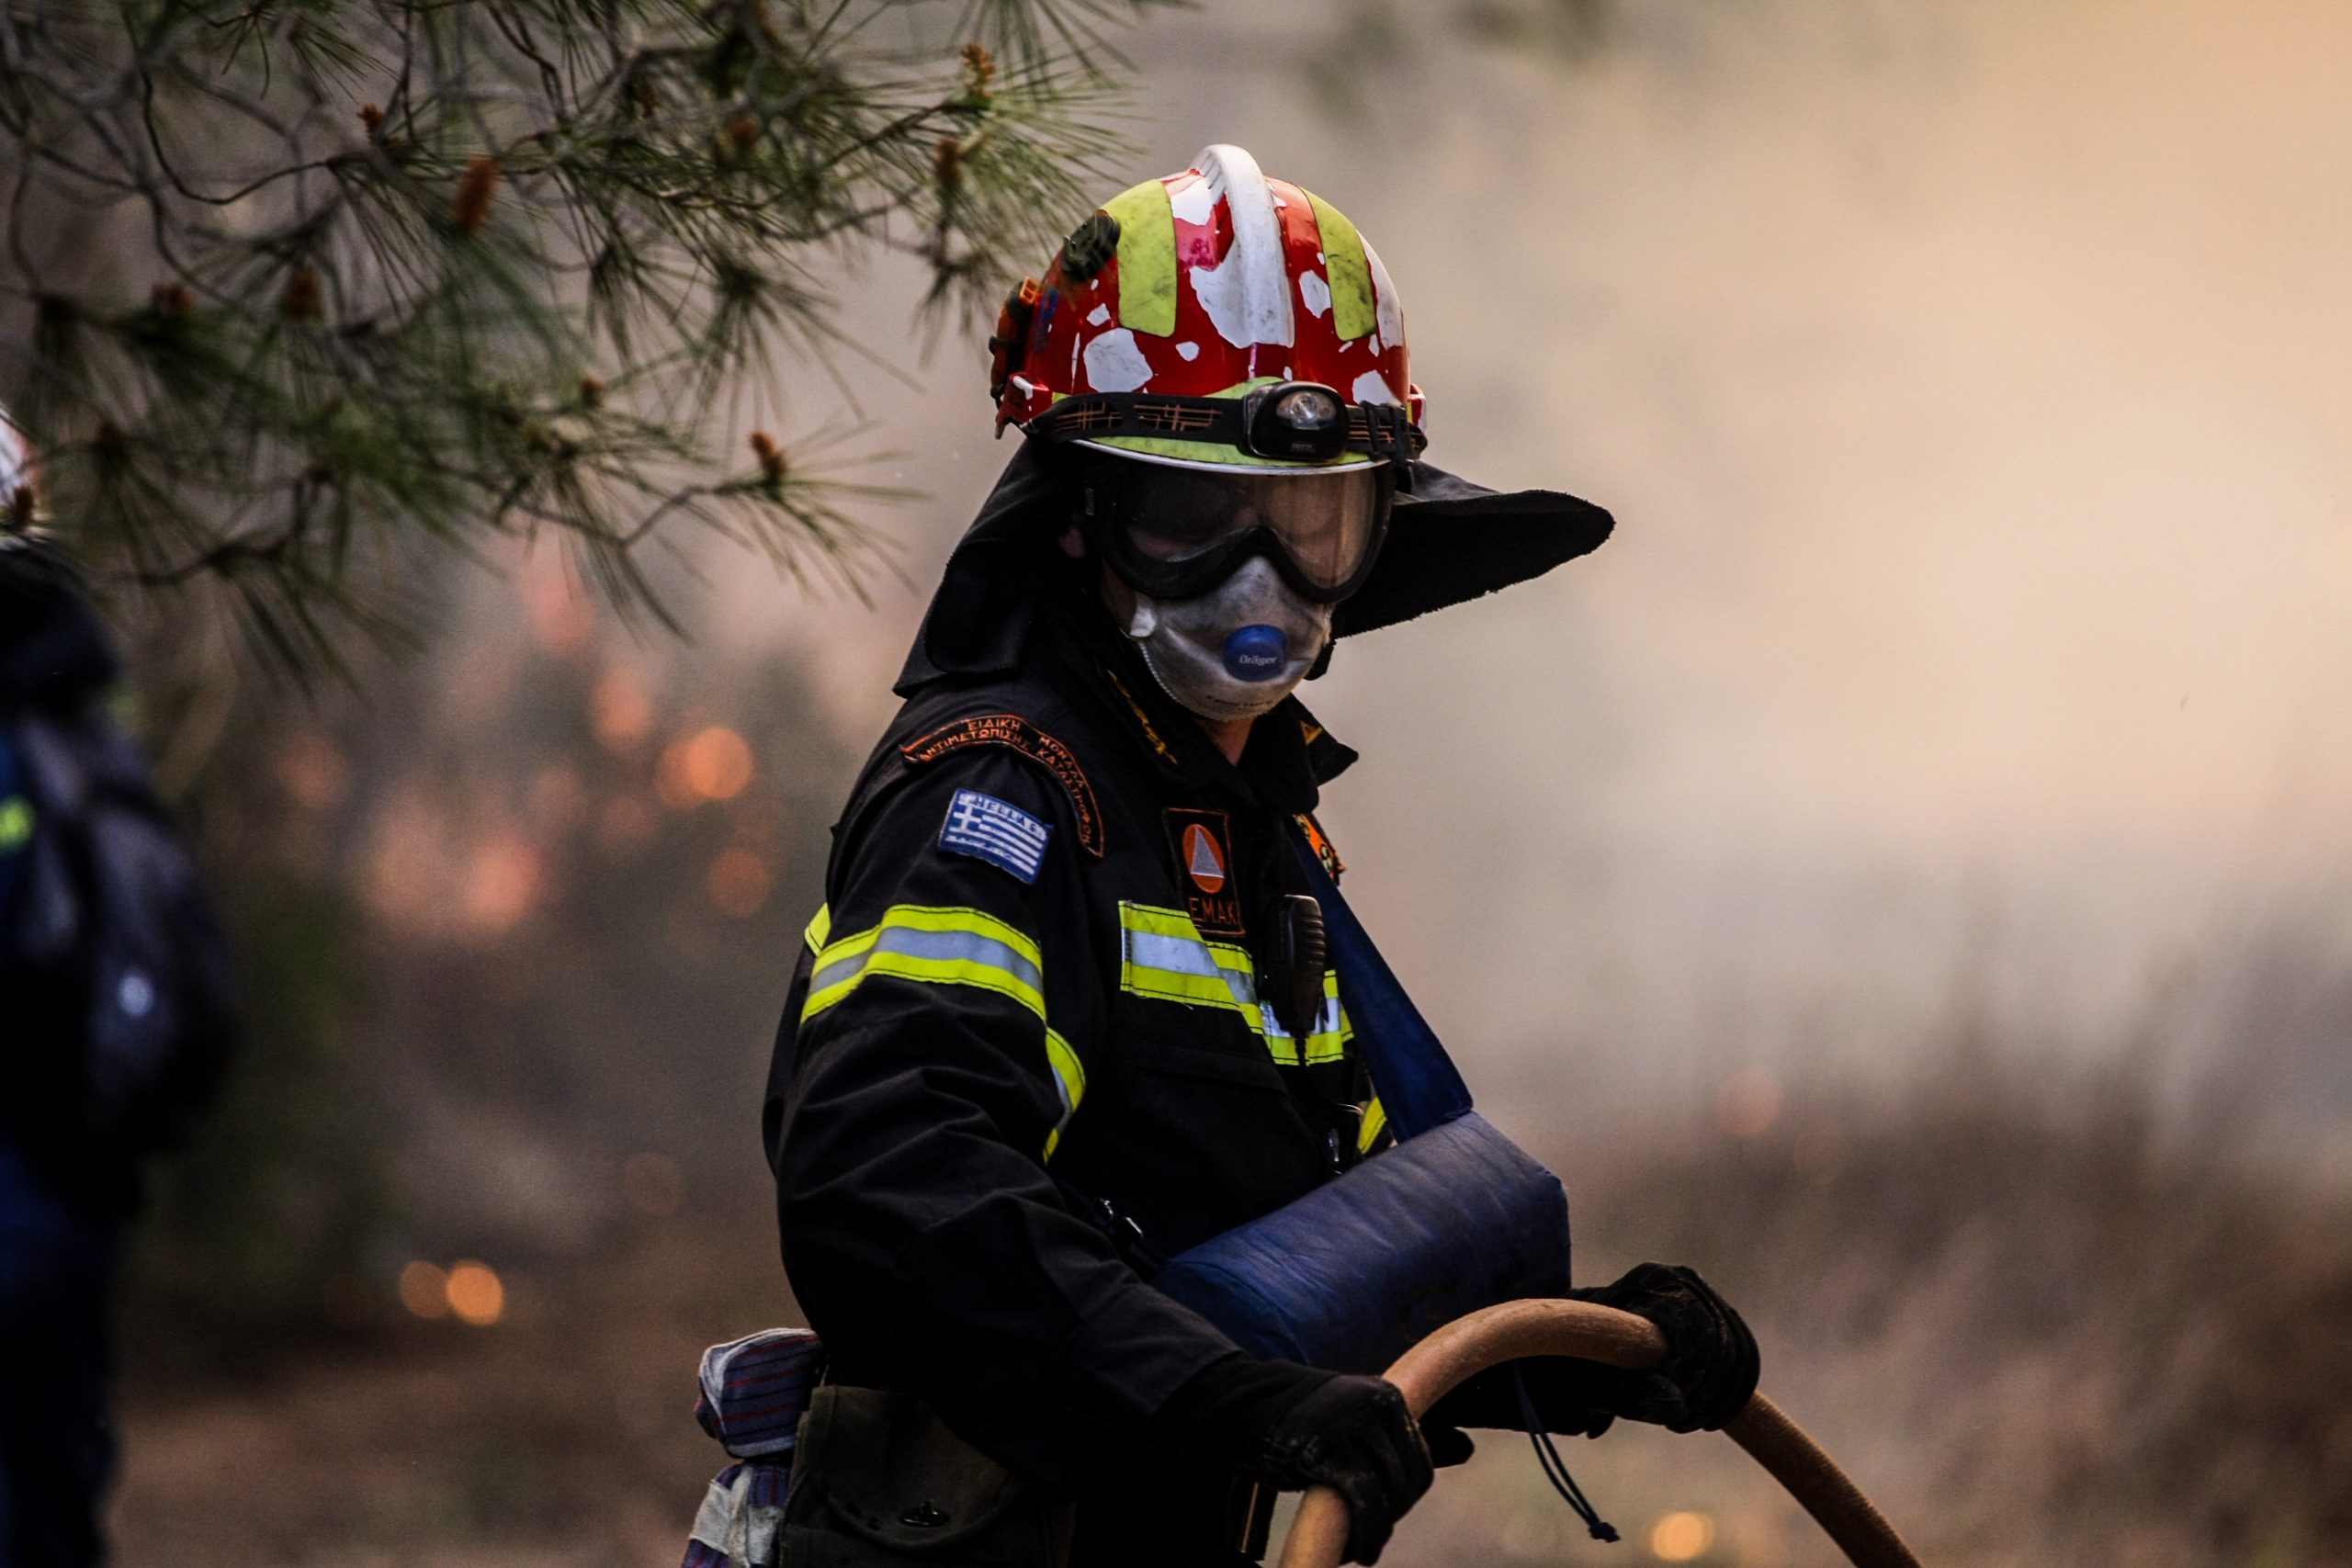 Δασικές πυρκαγιές: Για πρώτη φορά στην Ελλάδα προεγκατάσταση πυροσβεστών από κράτη της ΕΕ